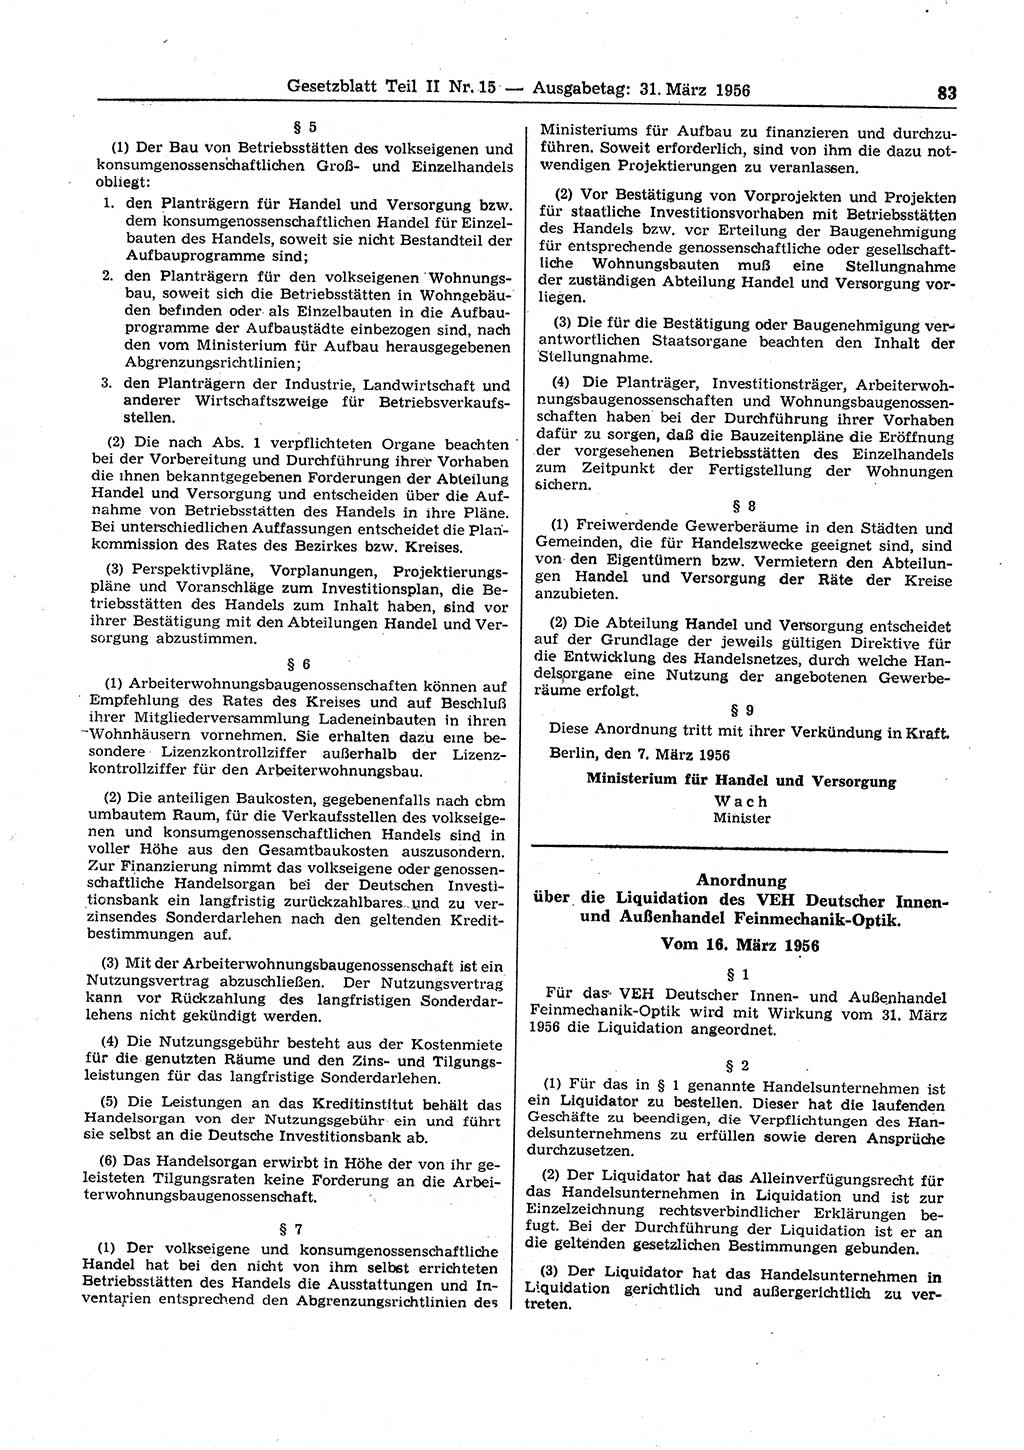 Gesetzblatt (GBl.) der Deutschen Demokratischen Republik (DDR) Teil ⅠⅠ 1956, Seite 83 (GBl. DDR ⅠⅠ 1956, S. 83)